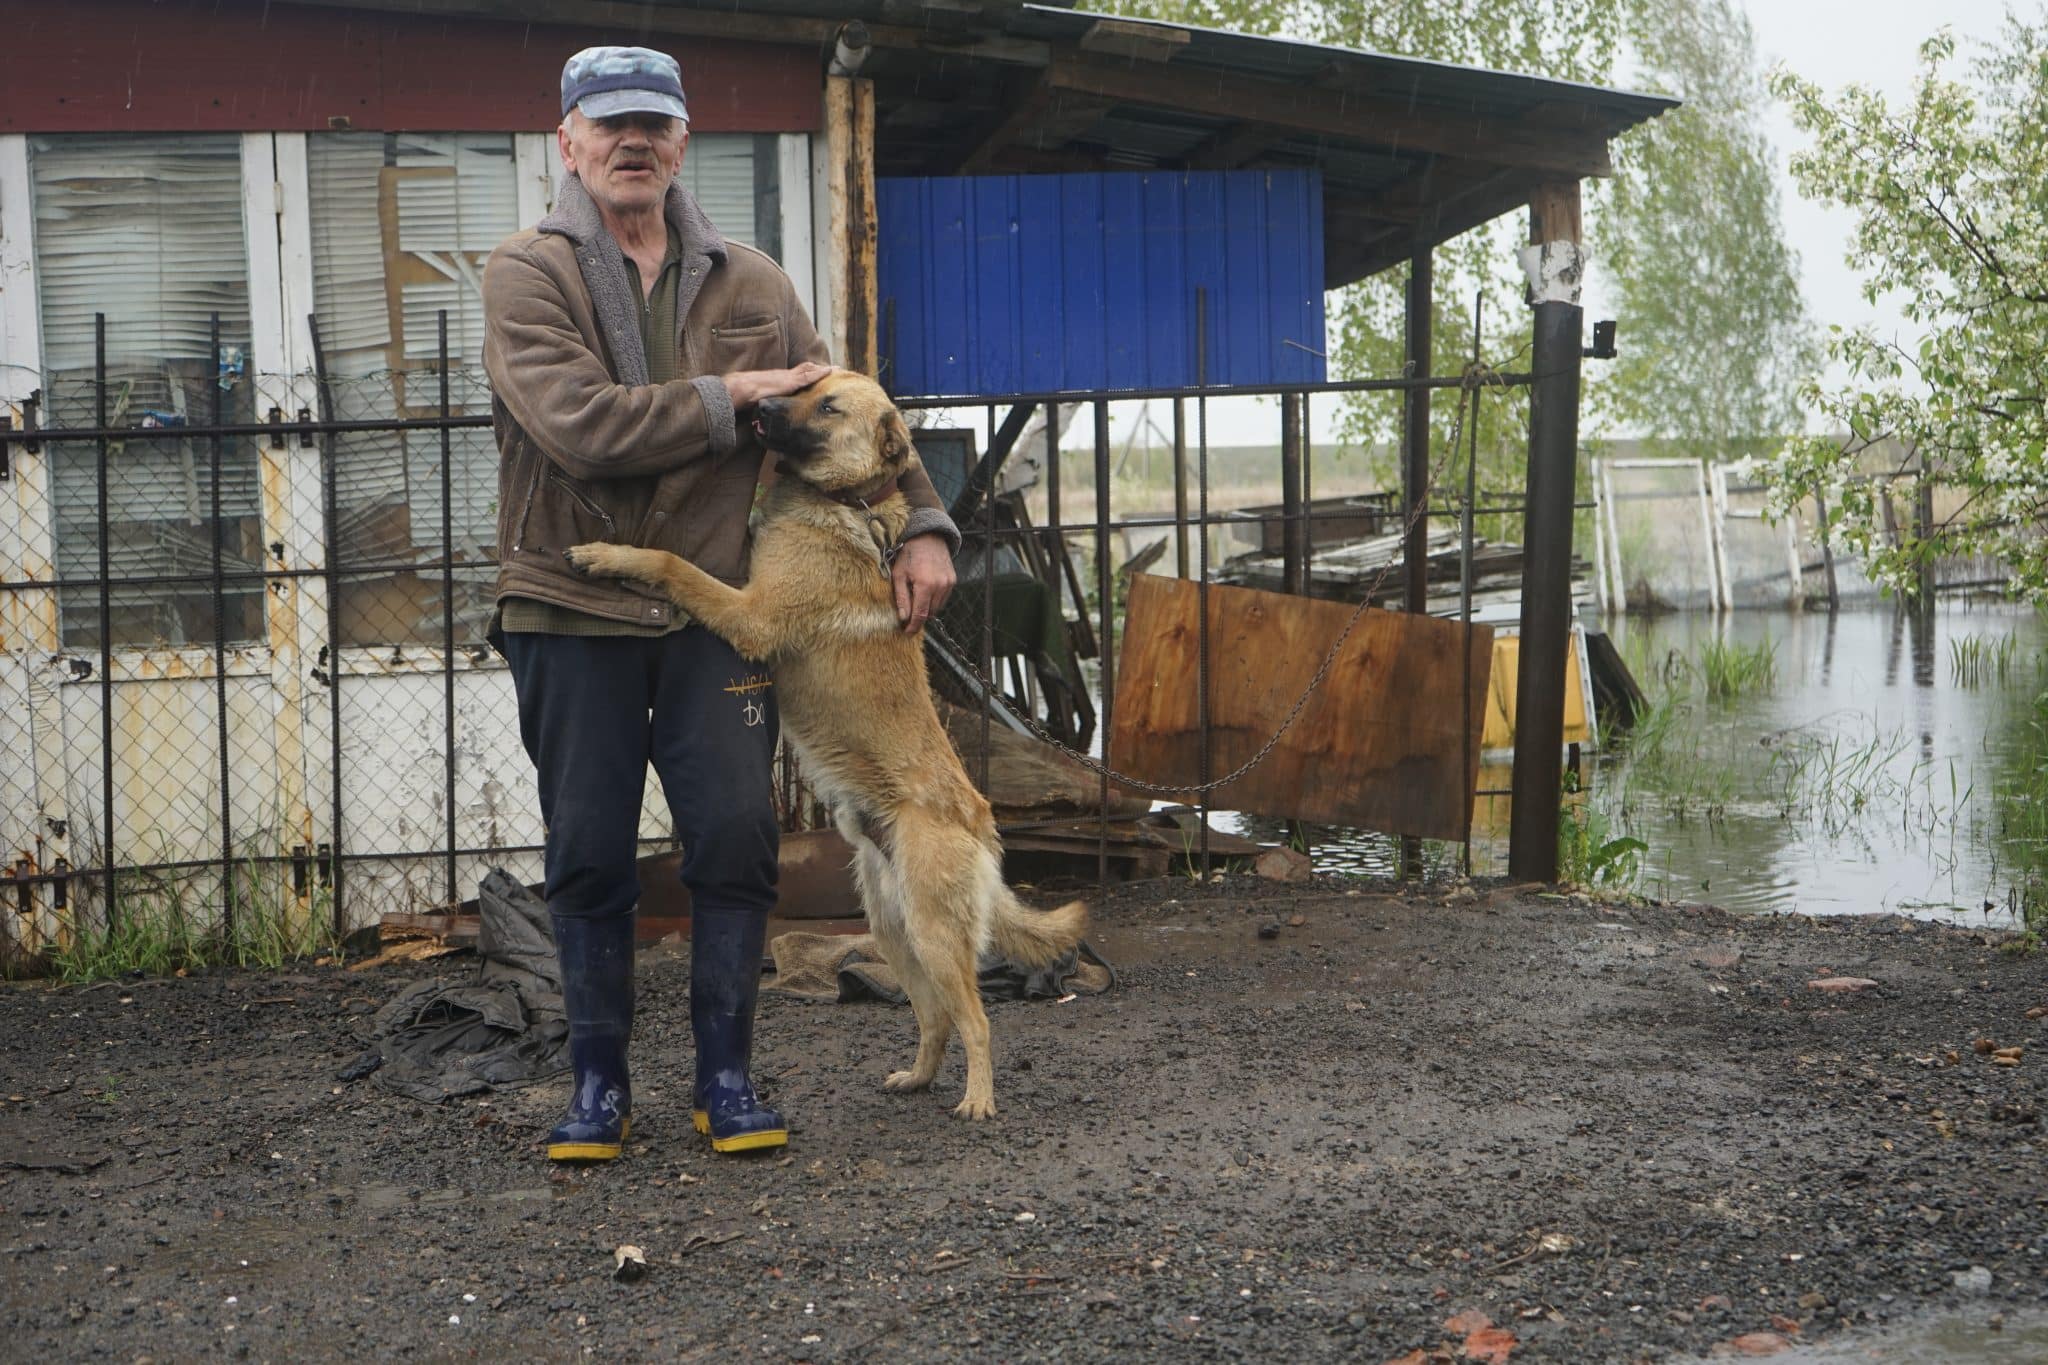 Не дачи, а бобровые хатки: как вода стала выселять целые семьи на окраине Омска